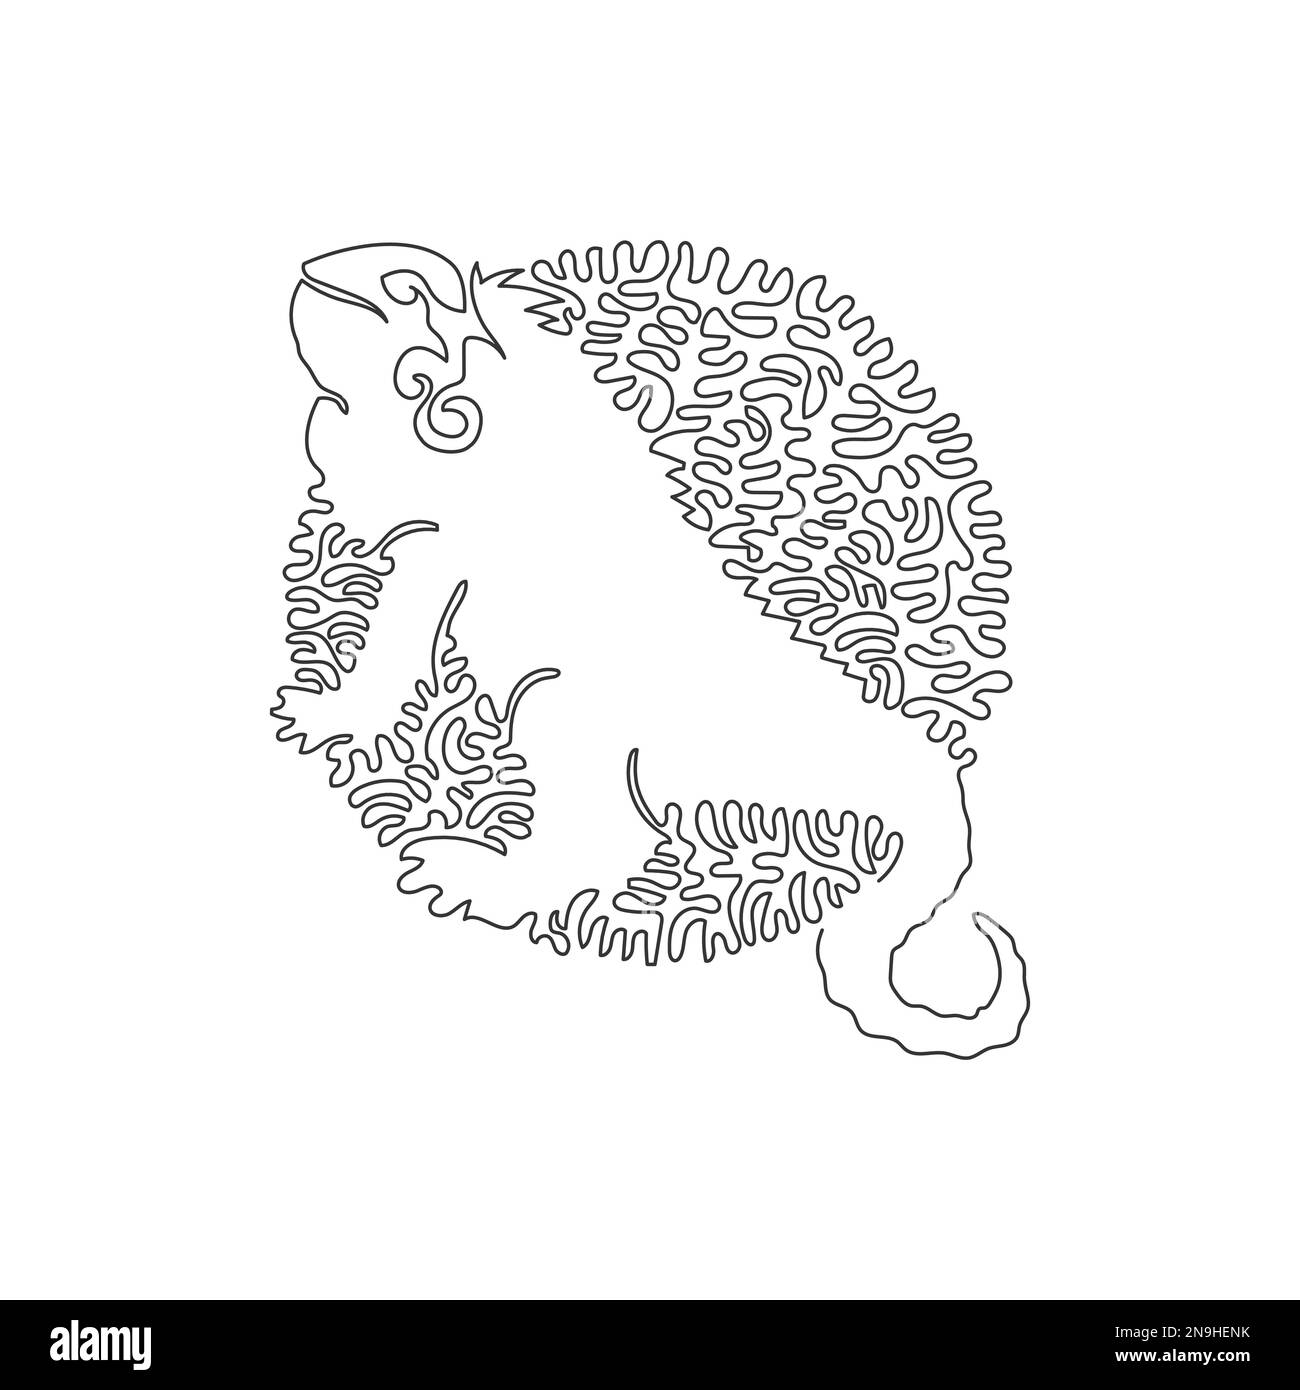 Simple curly un dessin de ligne de beau iguana art abstrait Ligne continue dessin graphique dessin illustration vectorielle de merveilleux iguana Illustration de Vecteur